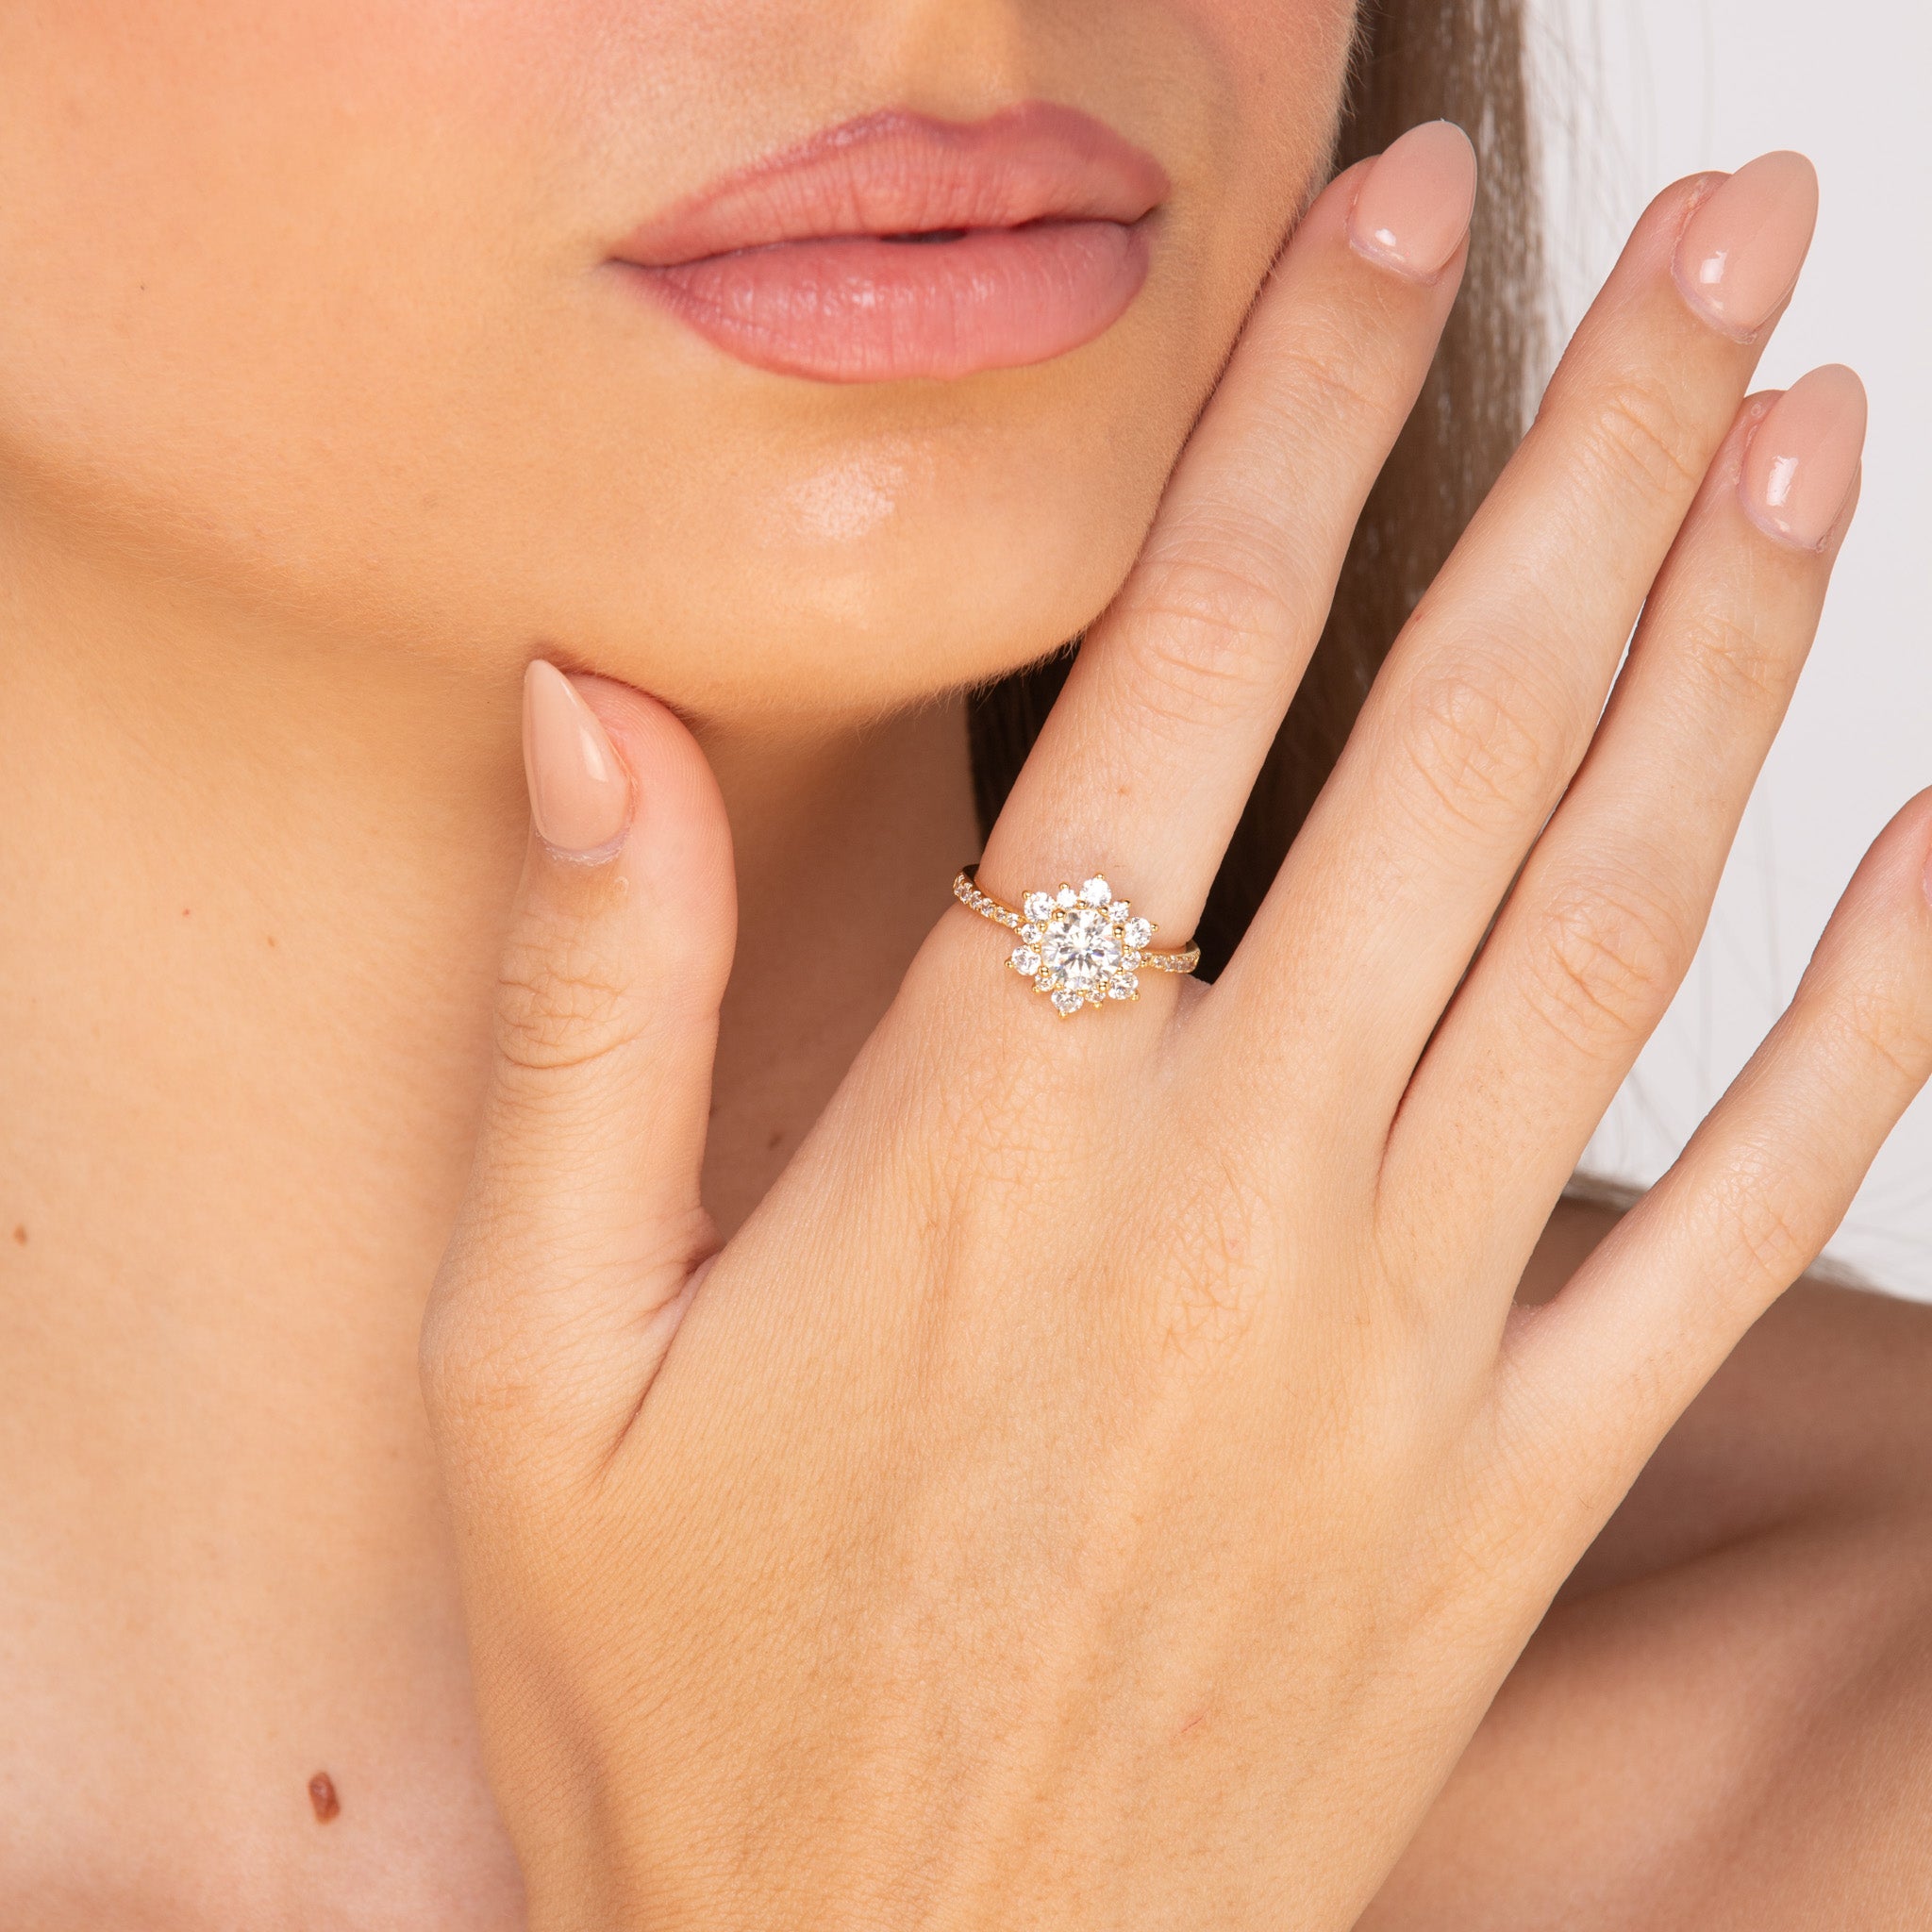 The Chloe - 1.0 crt Moissanite Diamond Ring